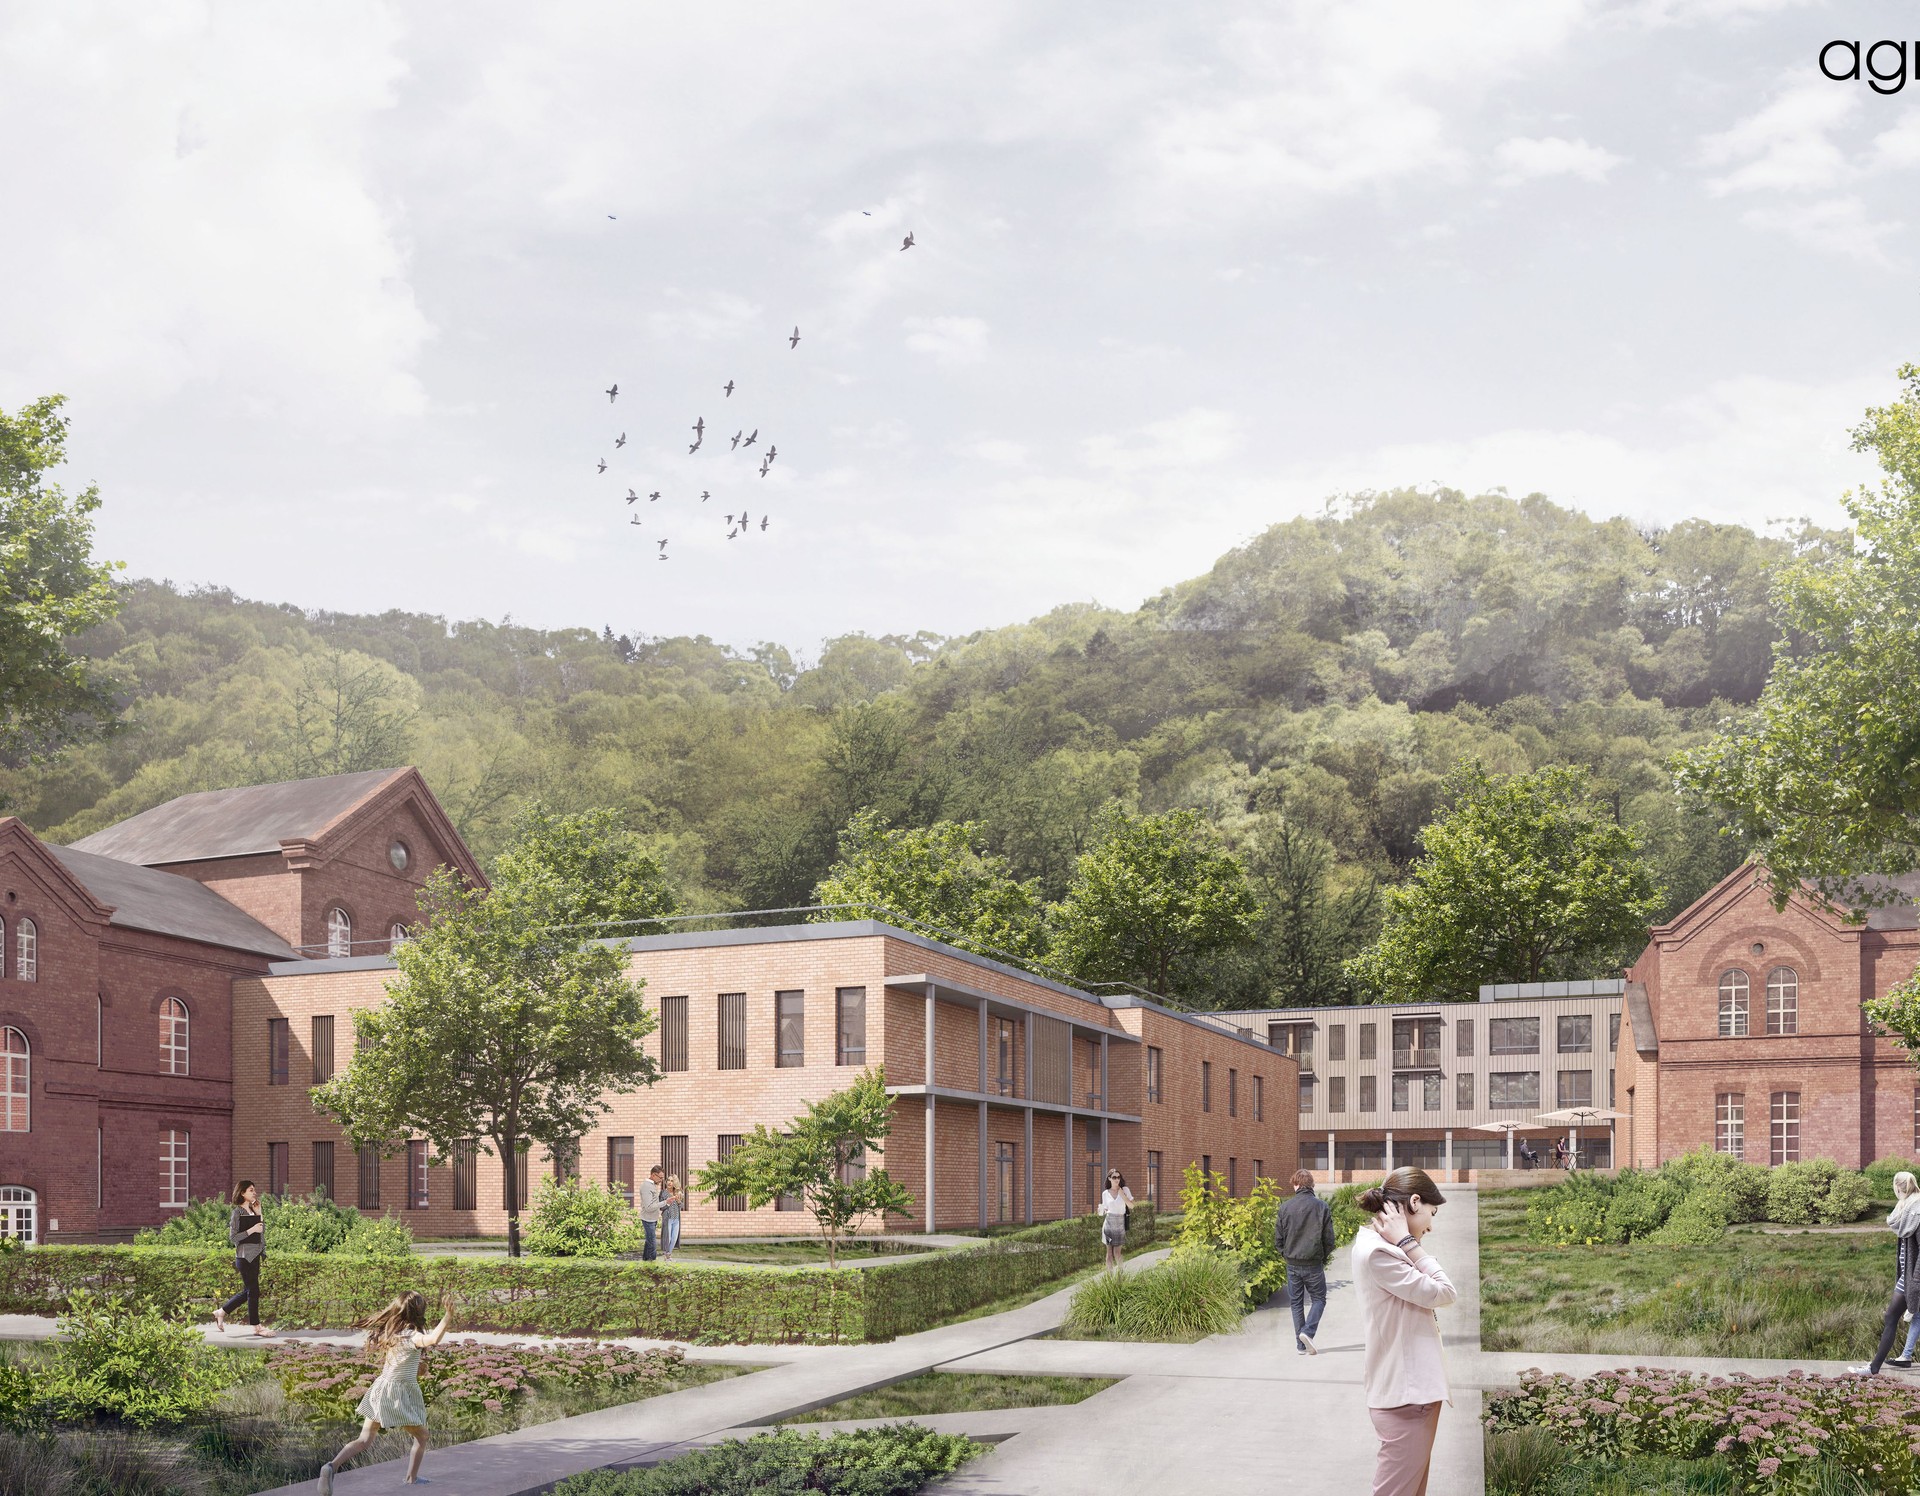 Der in grau gehaltene dreidimensionale Entwurf des zukünftigen Klinikneubaus hinter den bestehenden roten Gebäuden vor einem bewaldeten Hügel